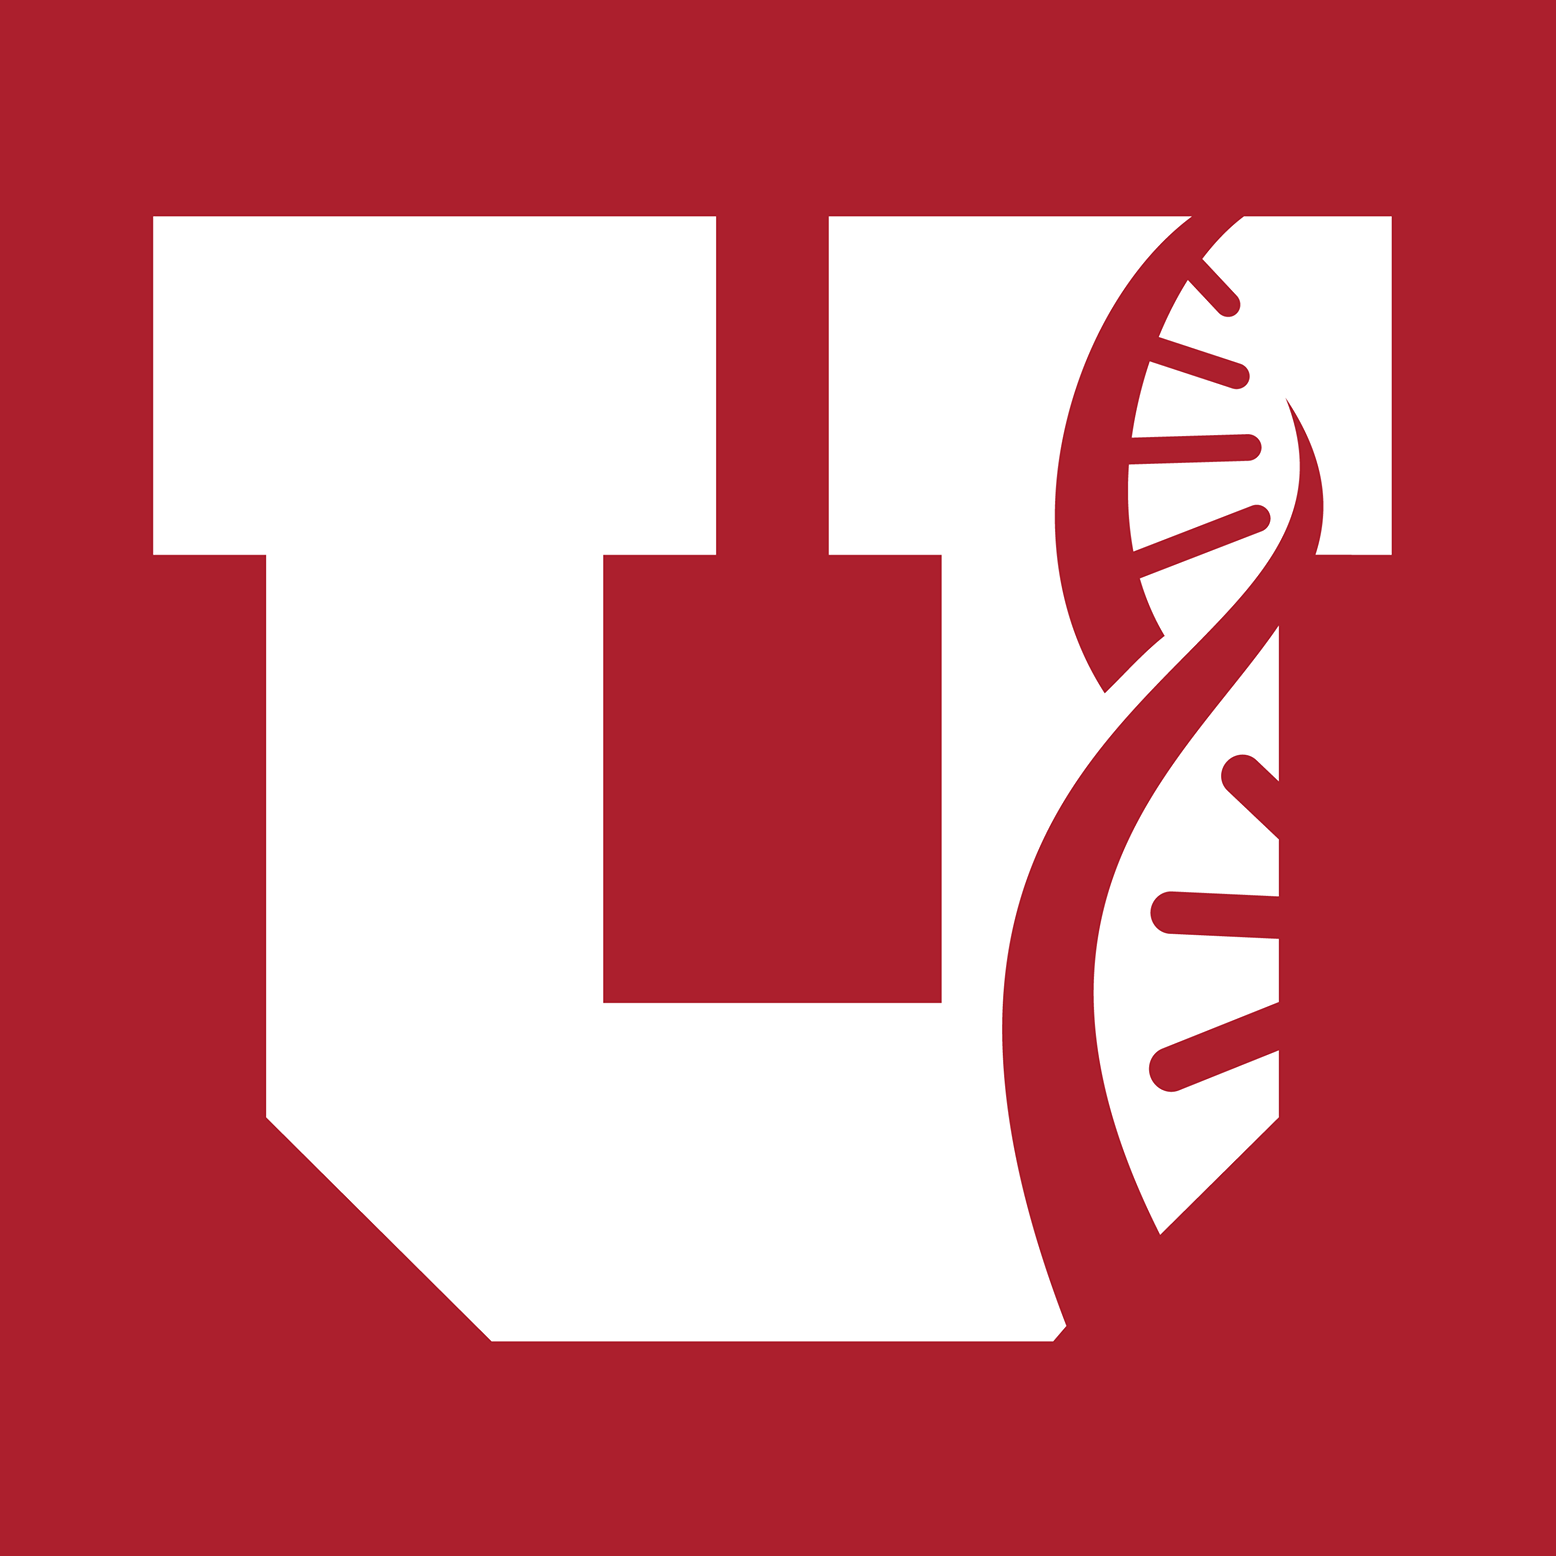 u-logo-red